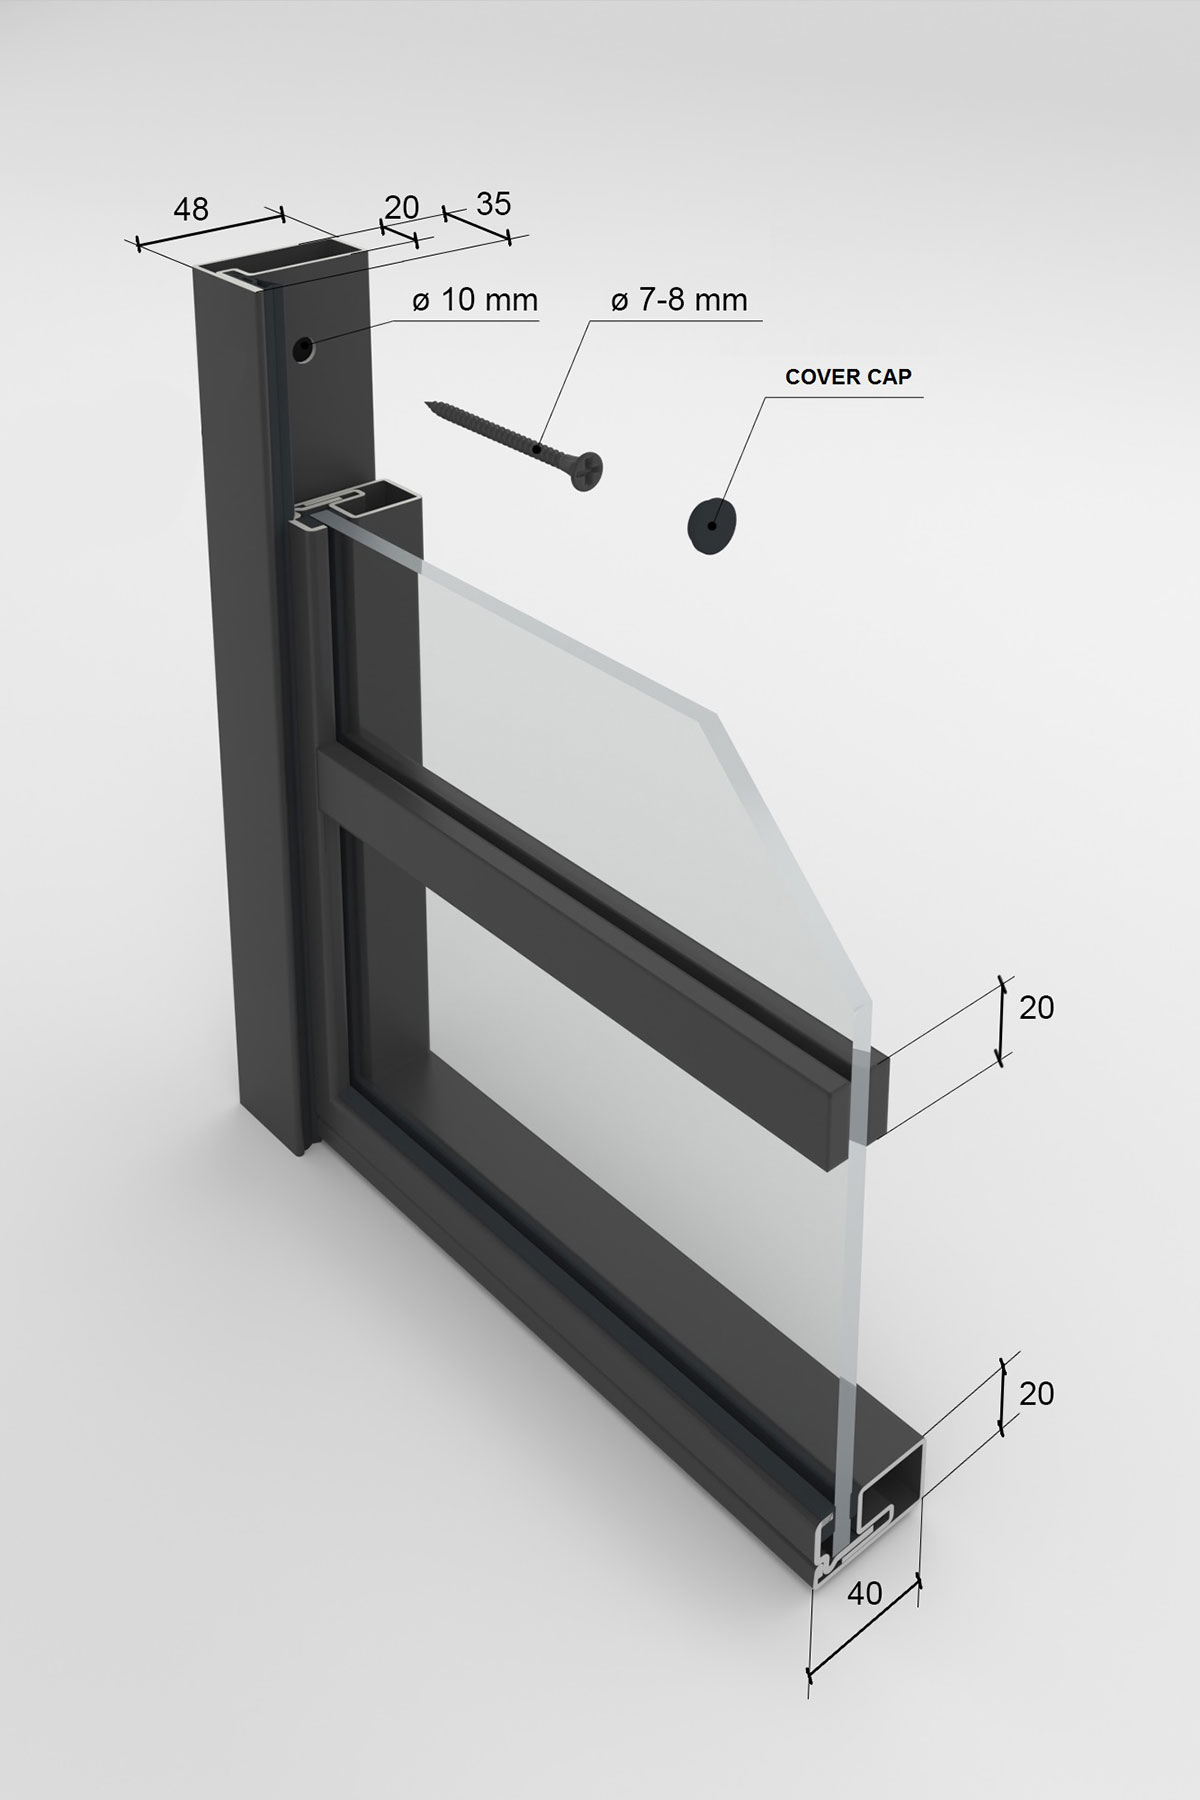 Dimensions of the profiles for Prestige II steel door option